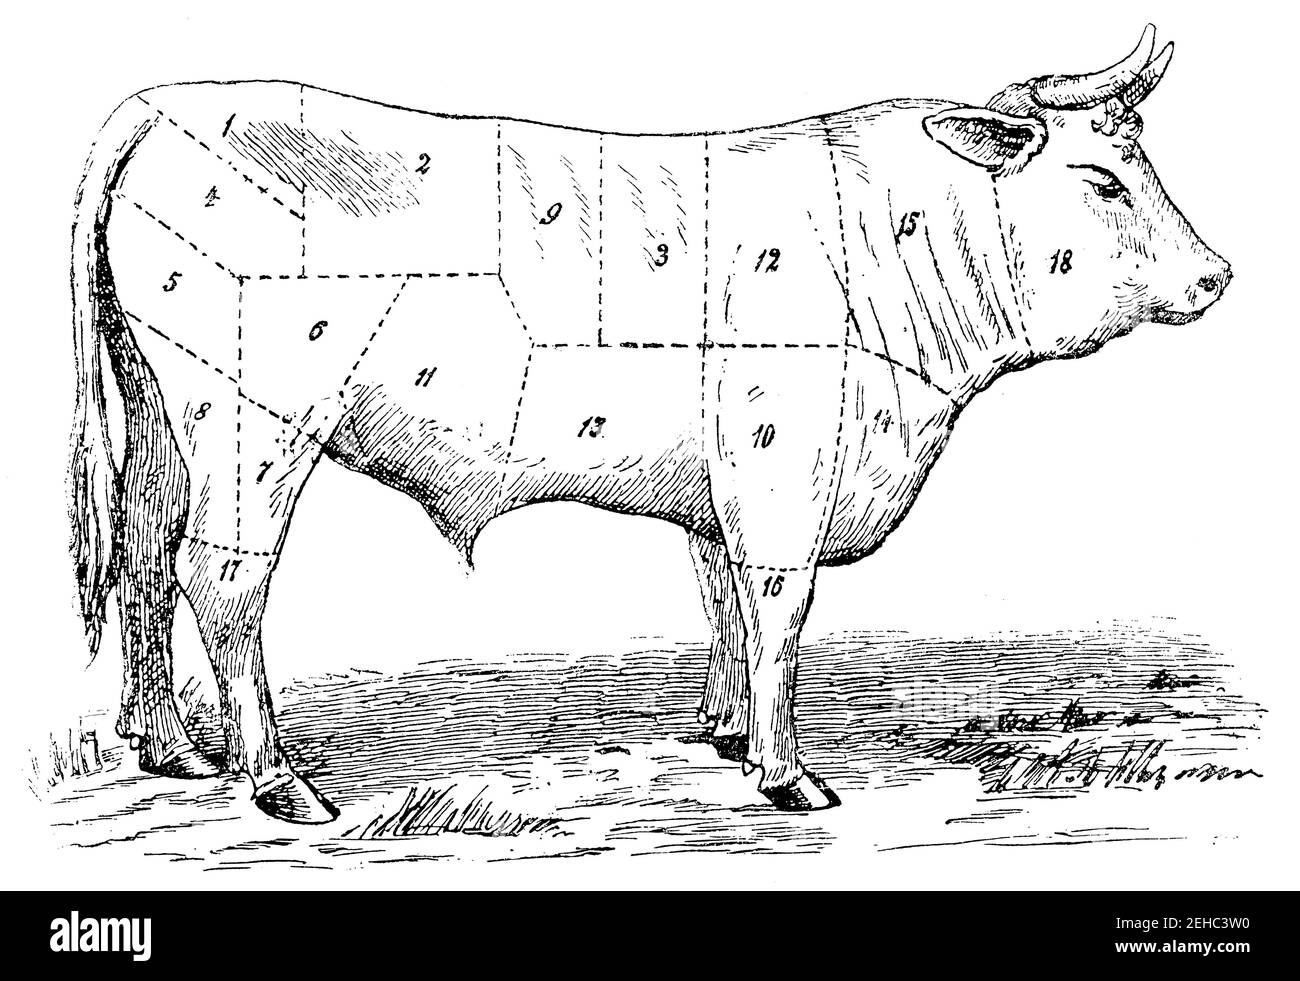 Gradation des types de viande selon le prix. Illustration du 19e siècle. Allemagne. Arrière-plan blanc. Banque D'Images